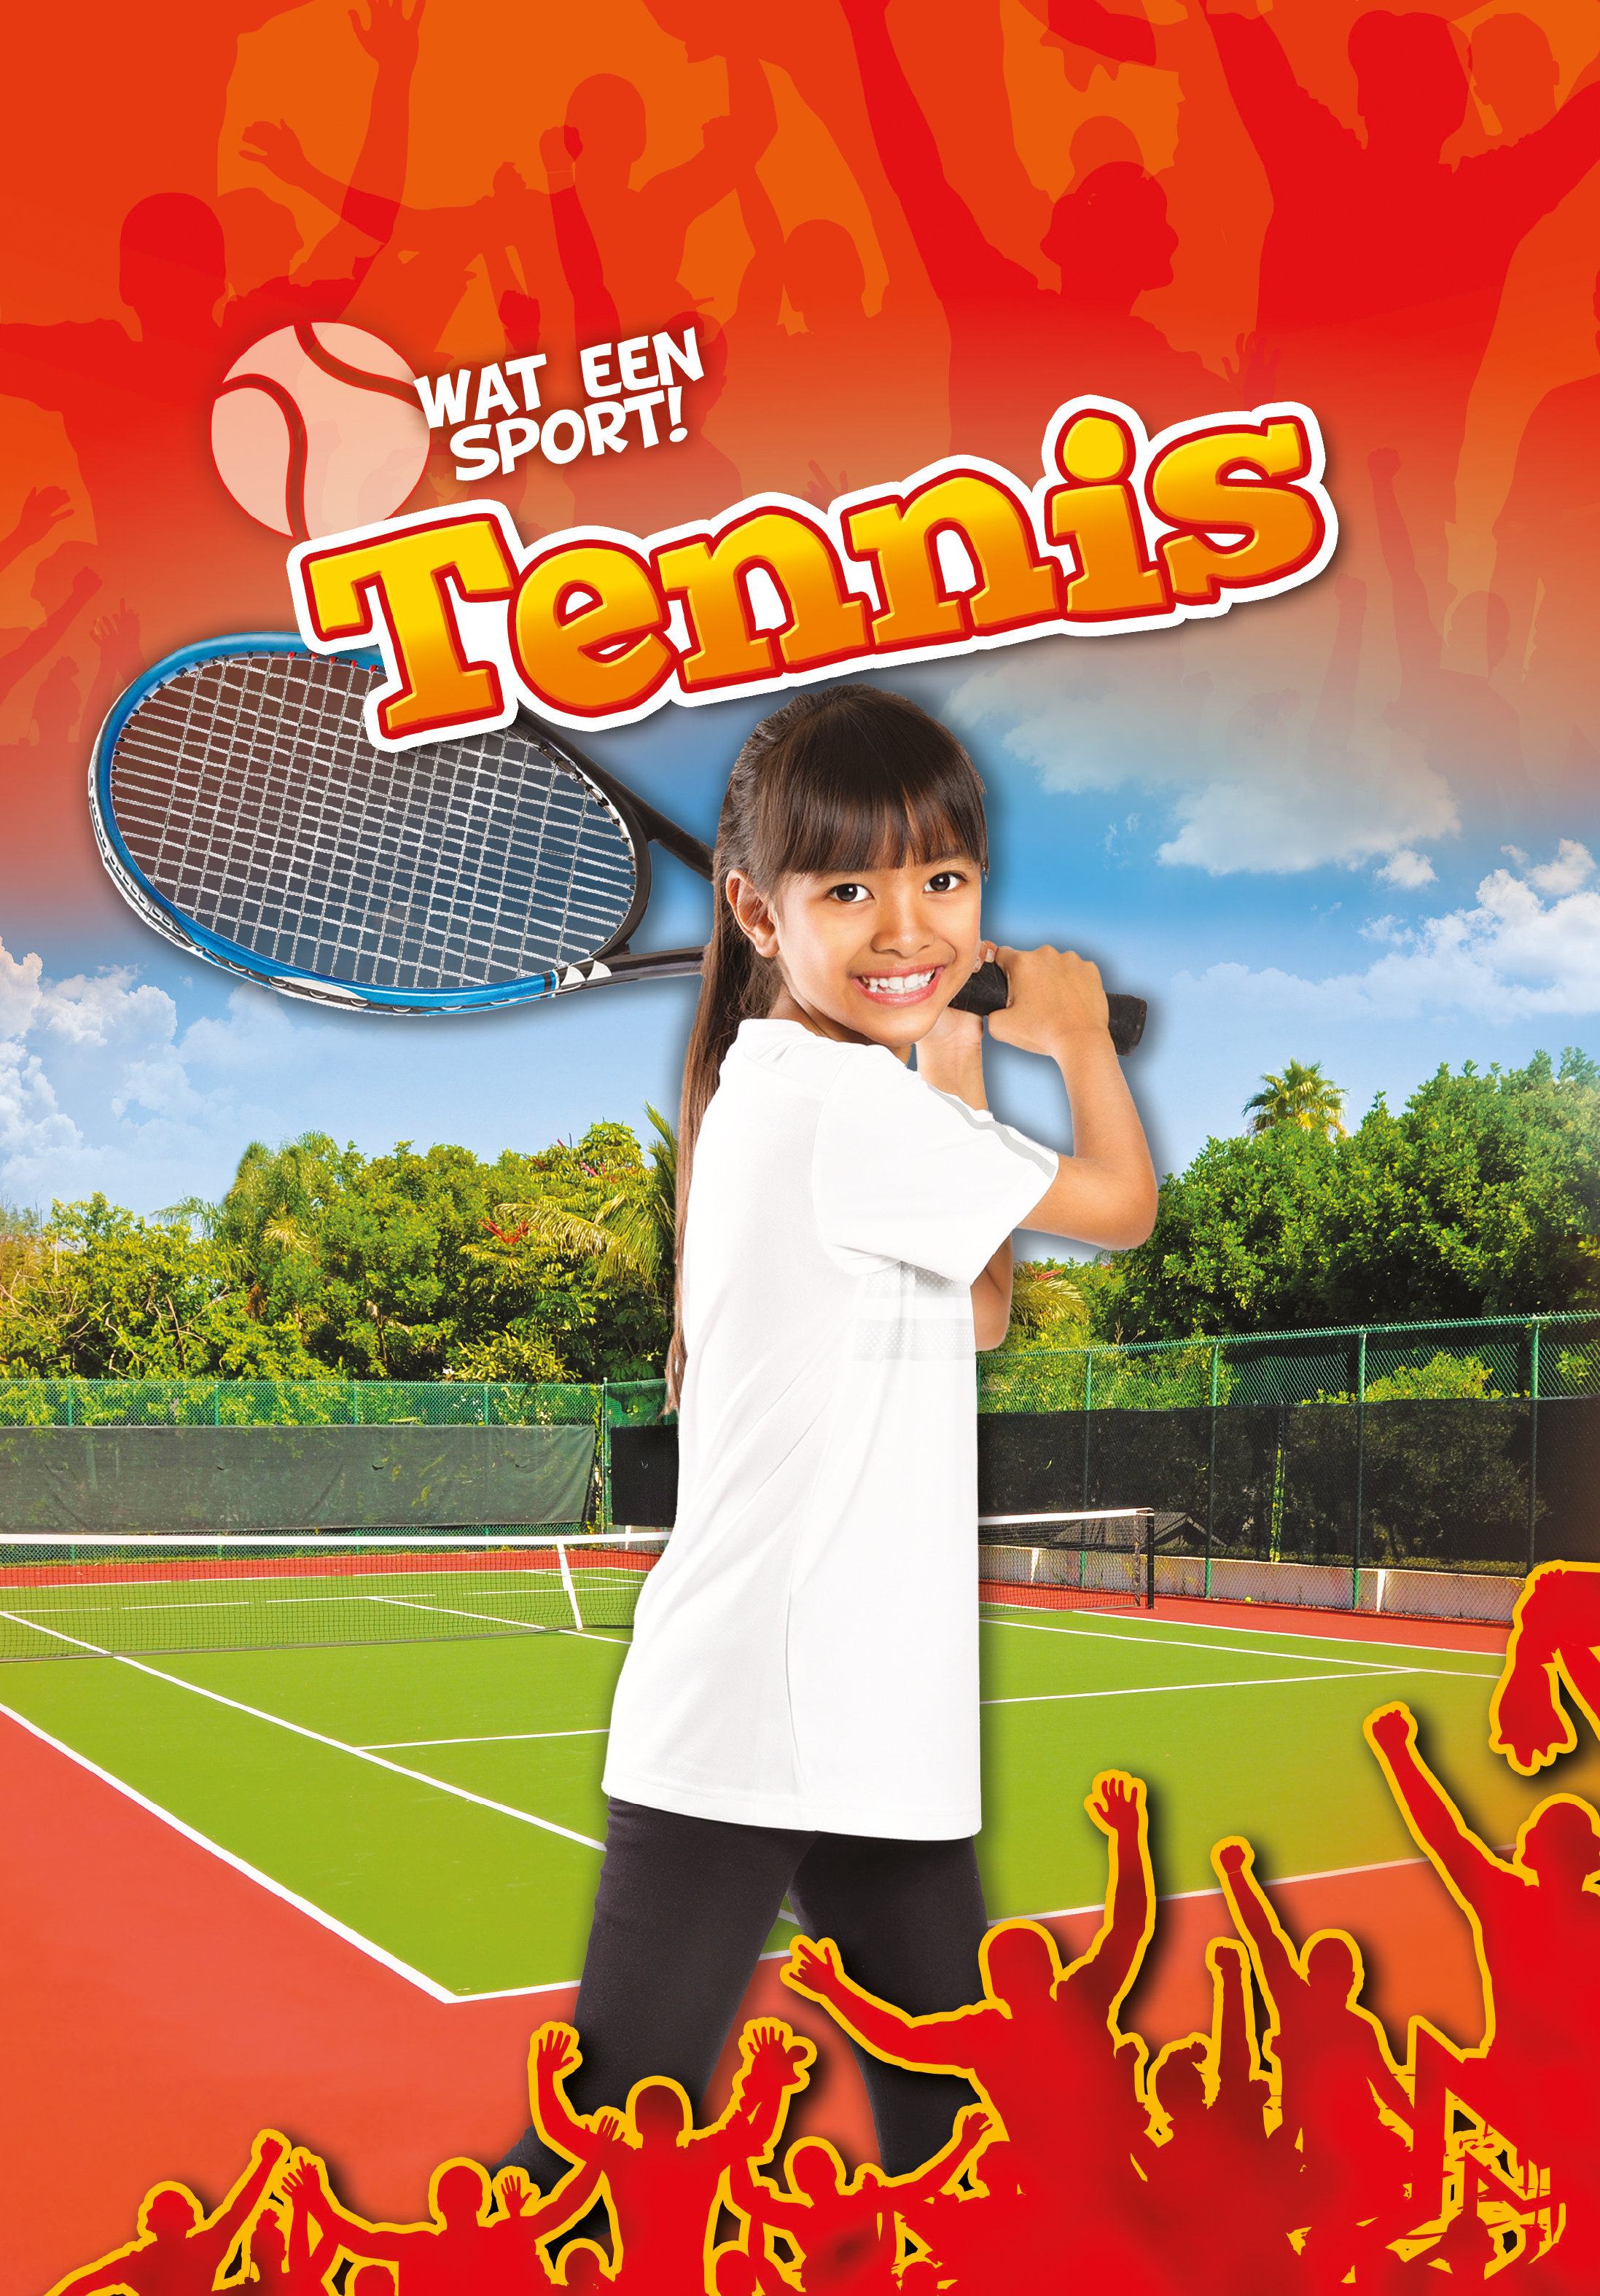 CNBWSP009 Tennis